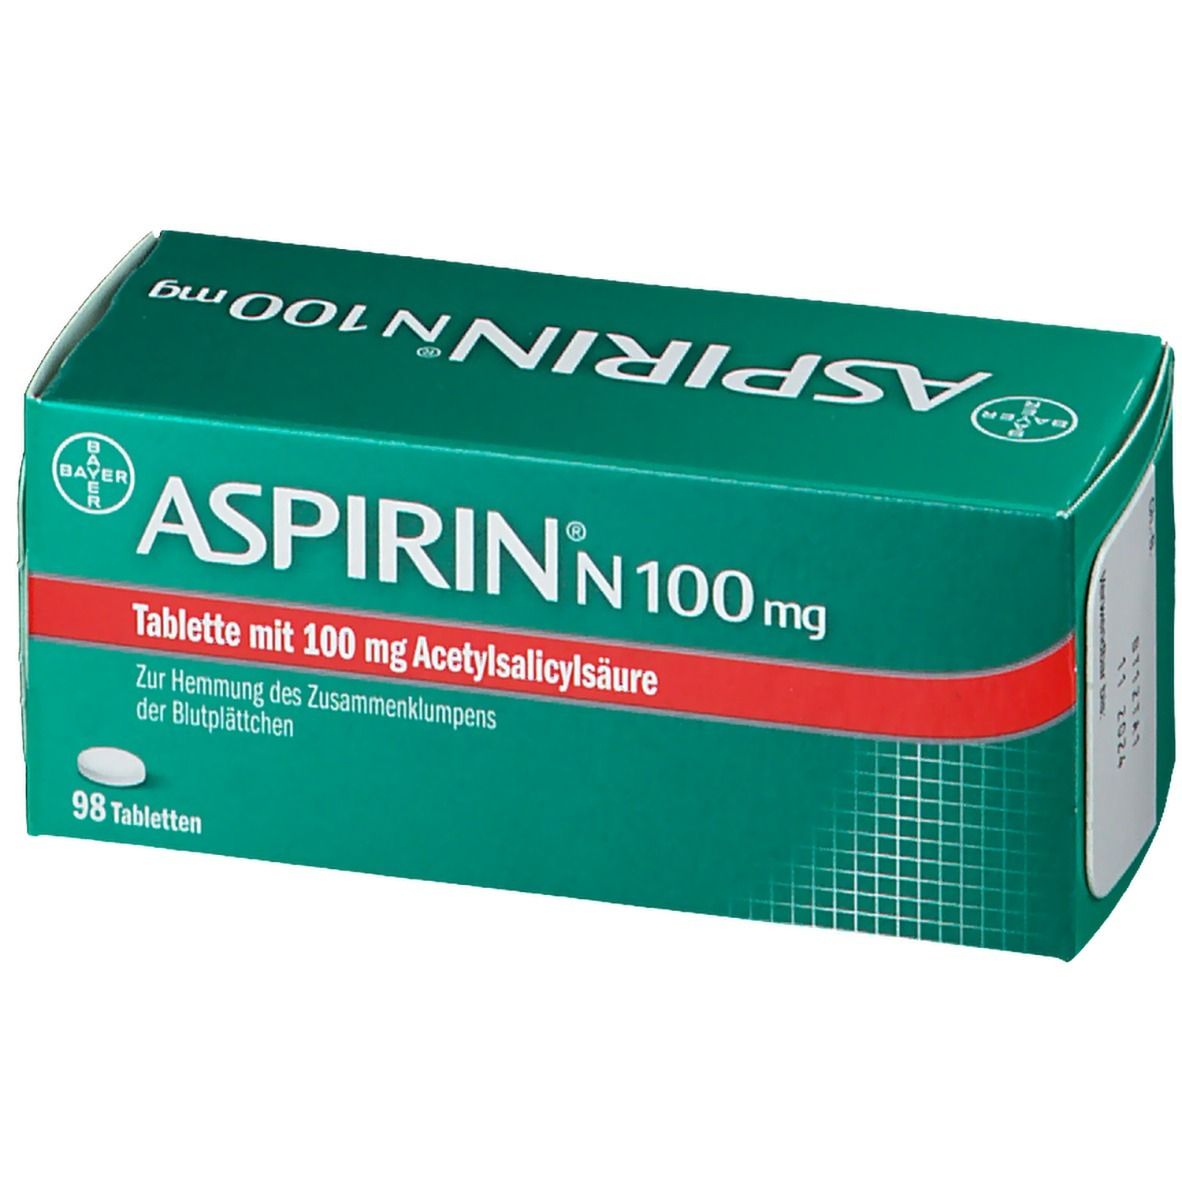 ASPIRIN® N 100 mg